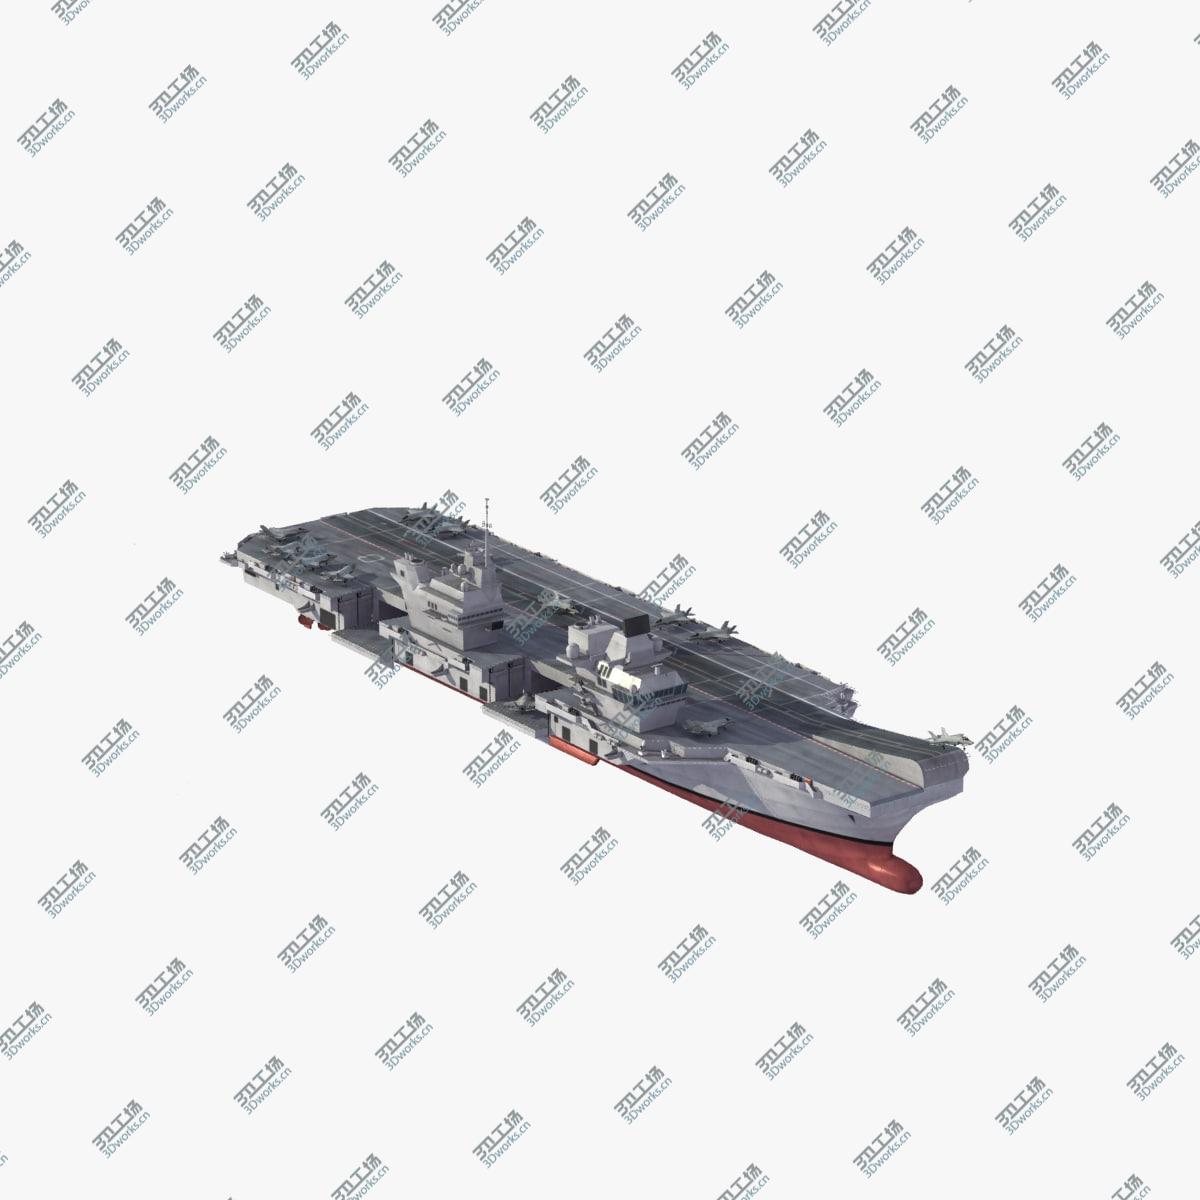 images/goods_img/20210114/Royal Navy Carrier Group 3D model/5.jpg